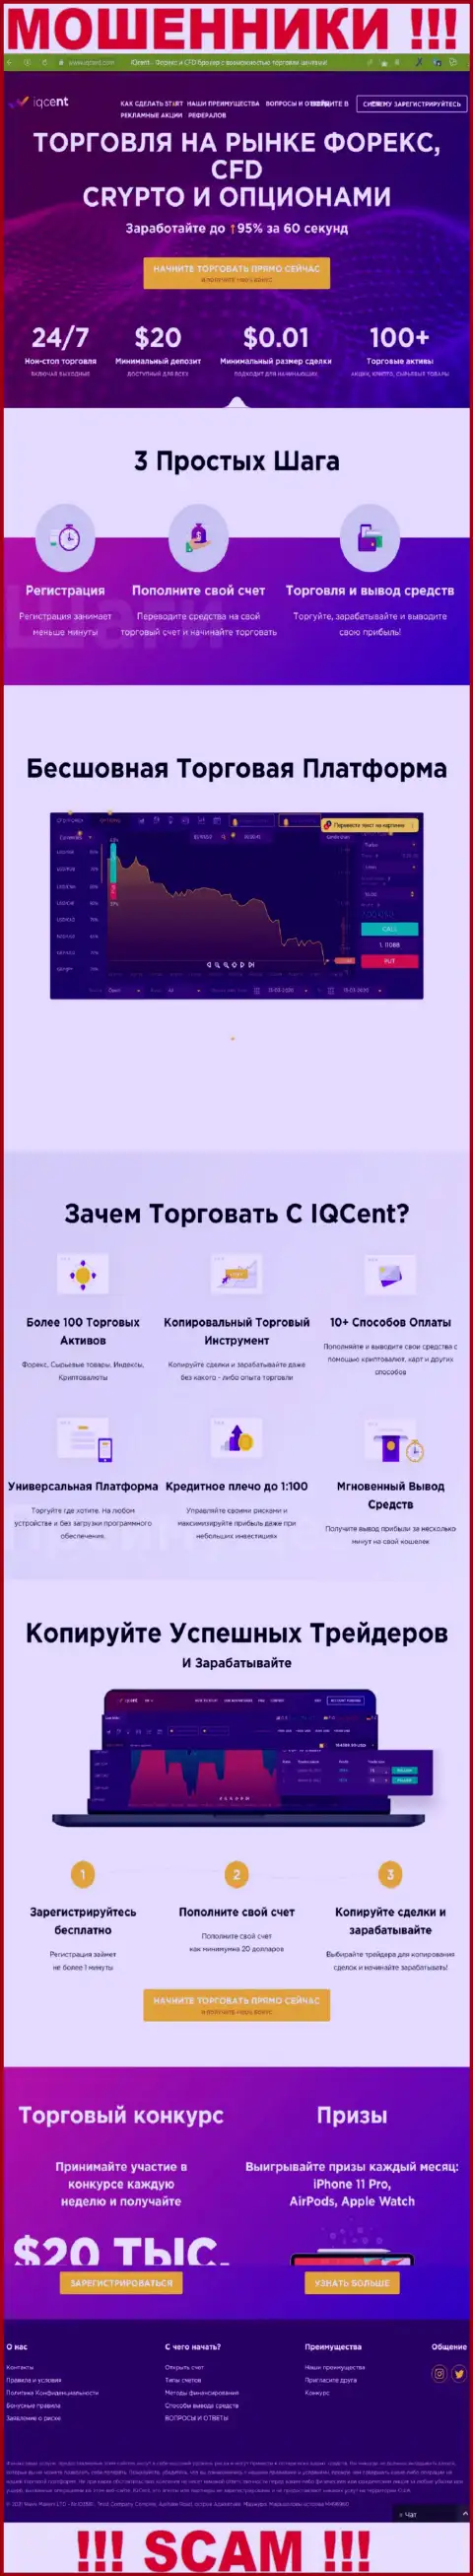 Официальный web-ресурс ворюг IQCent, заполненный сведениями для наивных людей